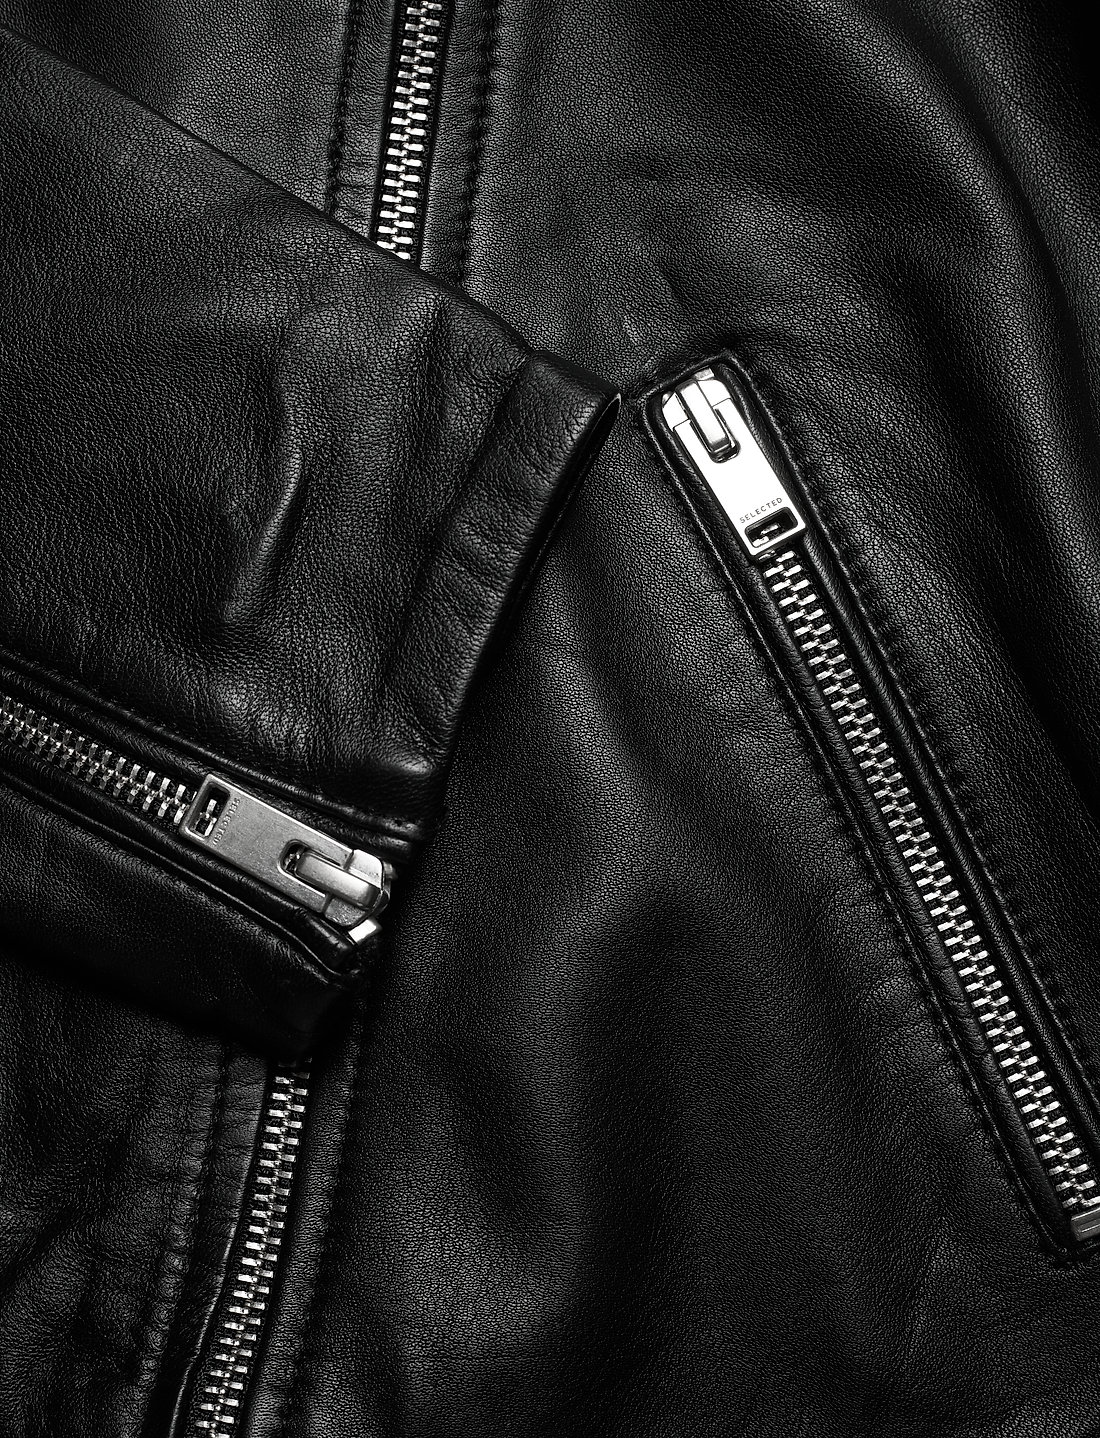 Overfladisk Afrika mærkelig Selected Femme Slfkatie Leather Jacket - 629 kr. Køb Læderjakker fra  Selected Femme online på Boozt.com. Hurtig levering & nem retur